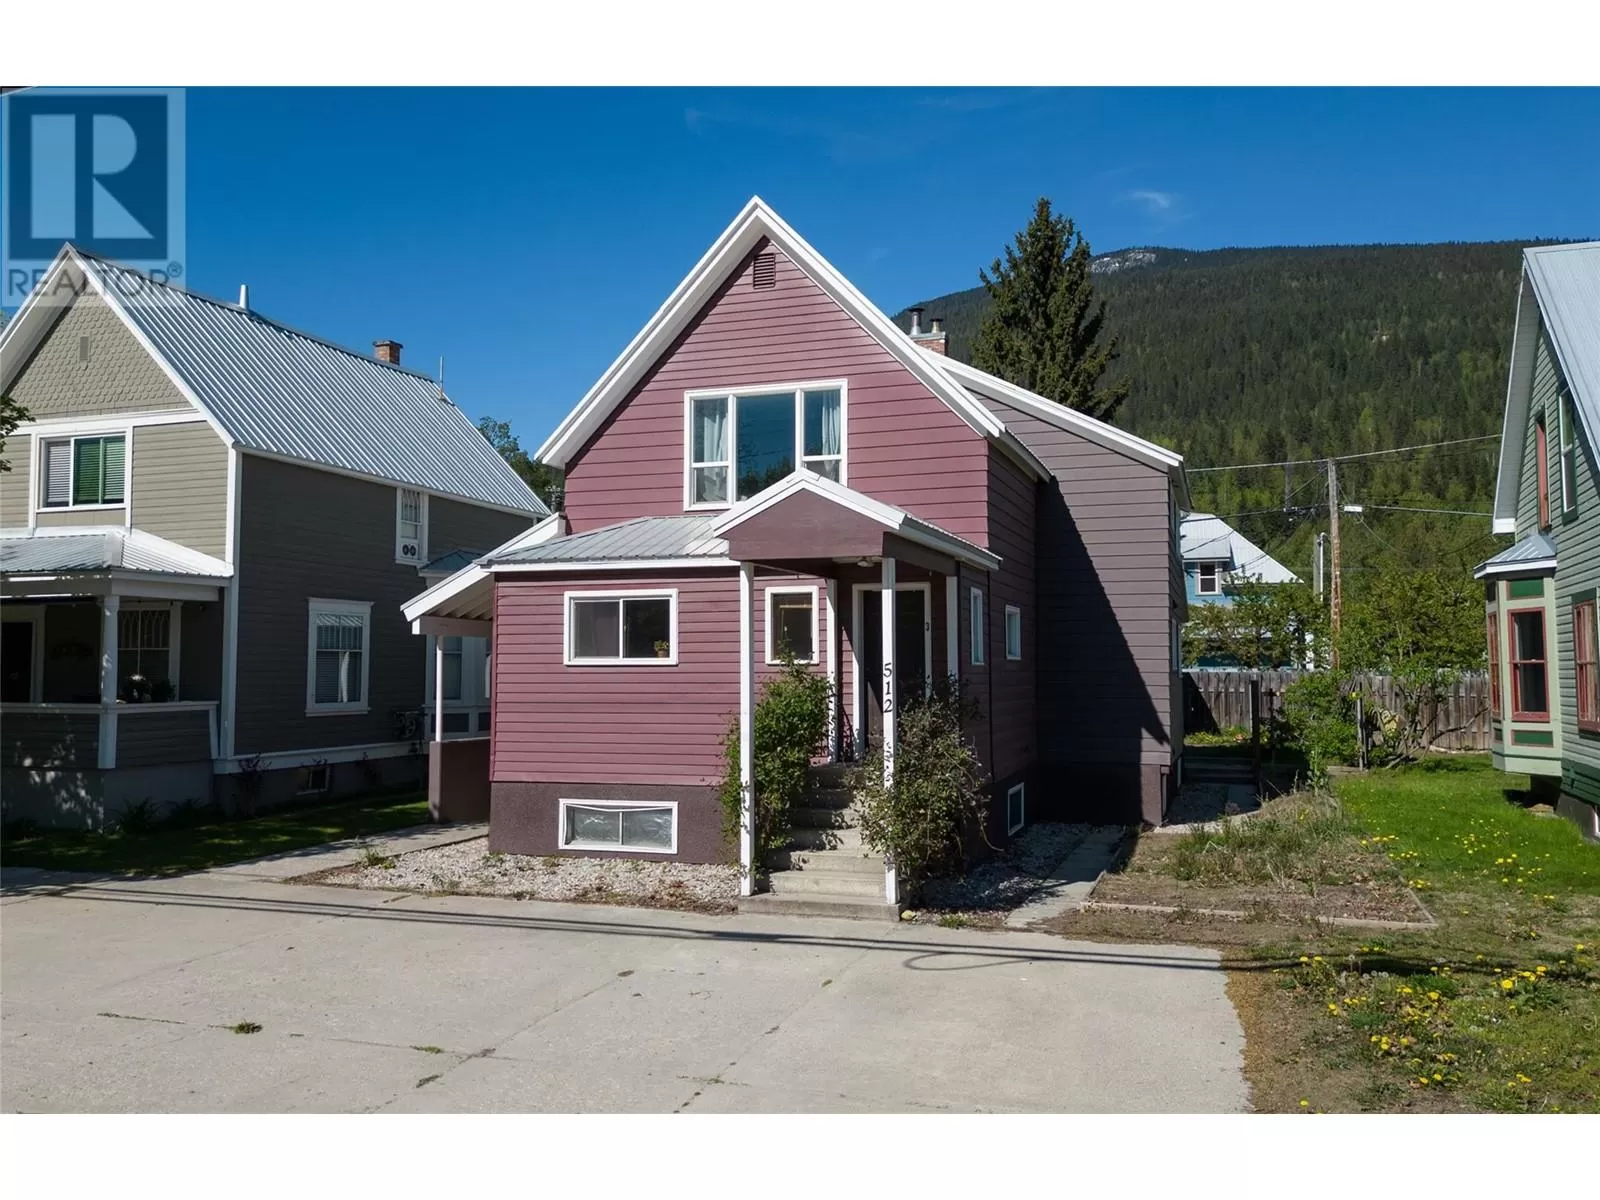 Triplex for rent: 512 Third Street W, Revelstoke, British Columbia V0E 2S0